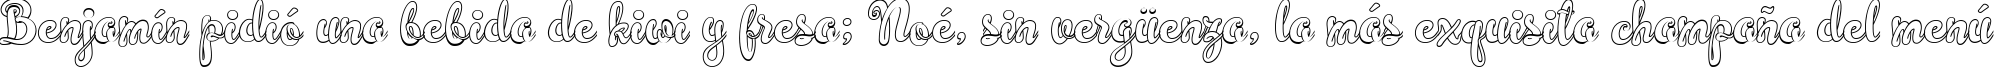 Пример написания шрифтом Simplisicky текста на испанском